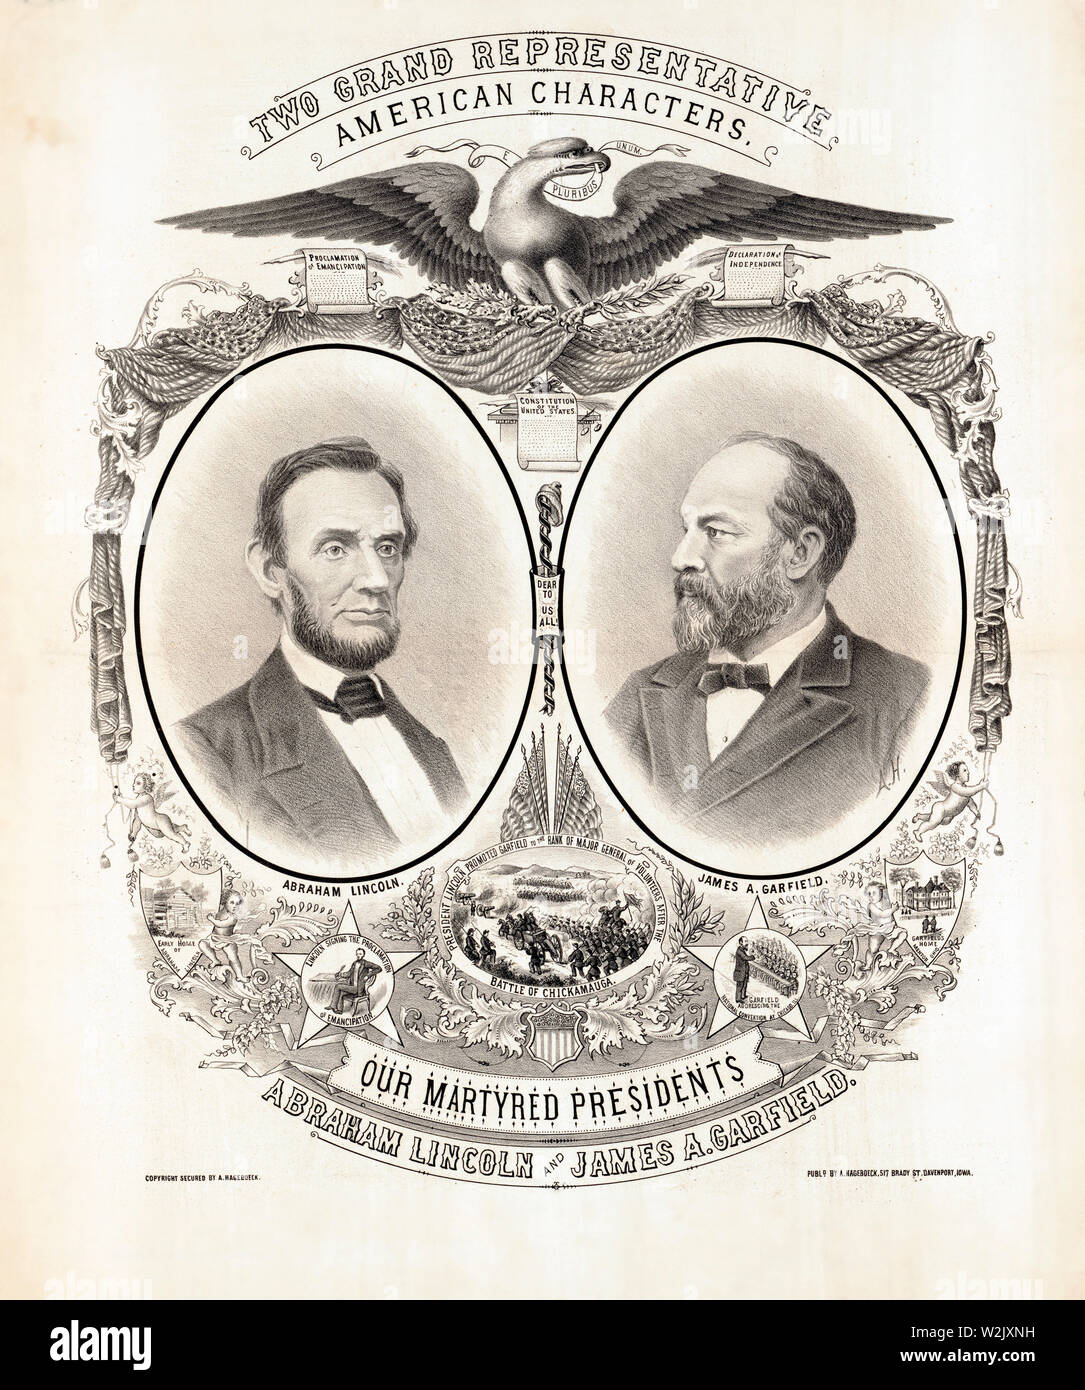 Zwei großartige Vertreter, Amerikanische Zeichen, Unsere ermordeten Präsidenten Abraham Lincoln, und James A. Garfield, August Hagenboeck, 1881 veröffentlicht. Stockfoto